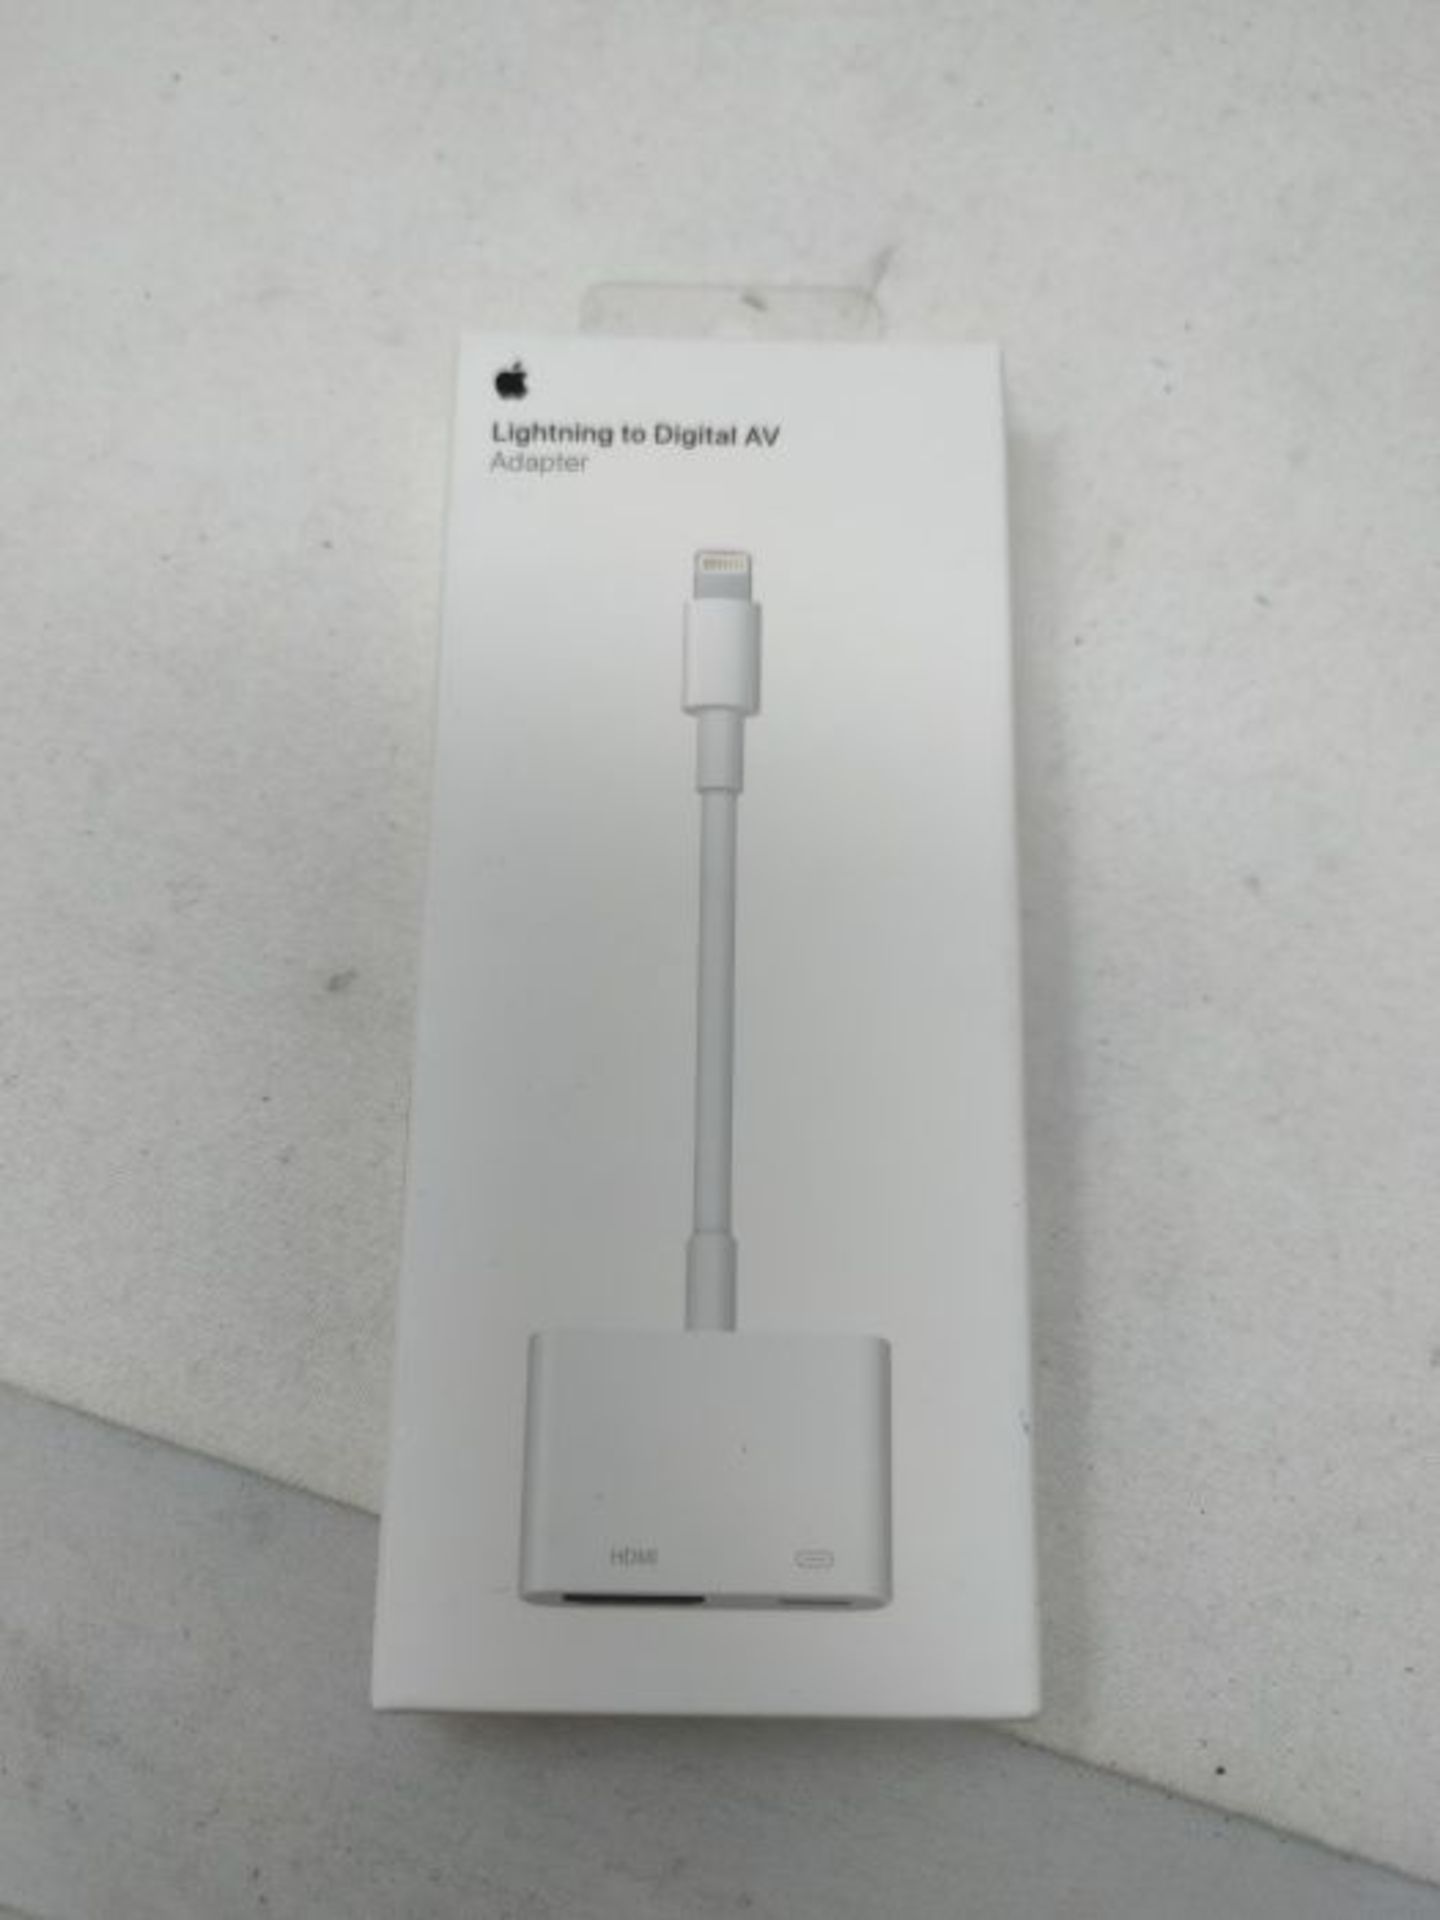 Apple Lightning Digital AV Adapter - Image 2 of 3